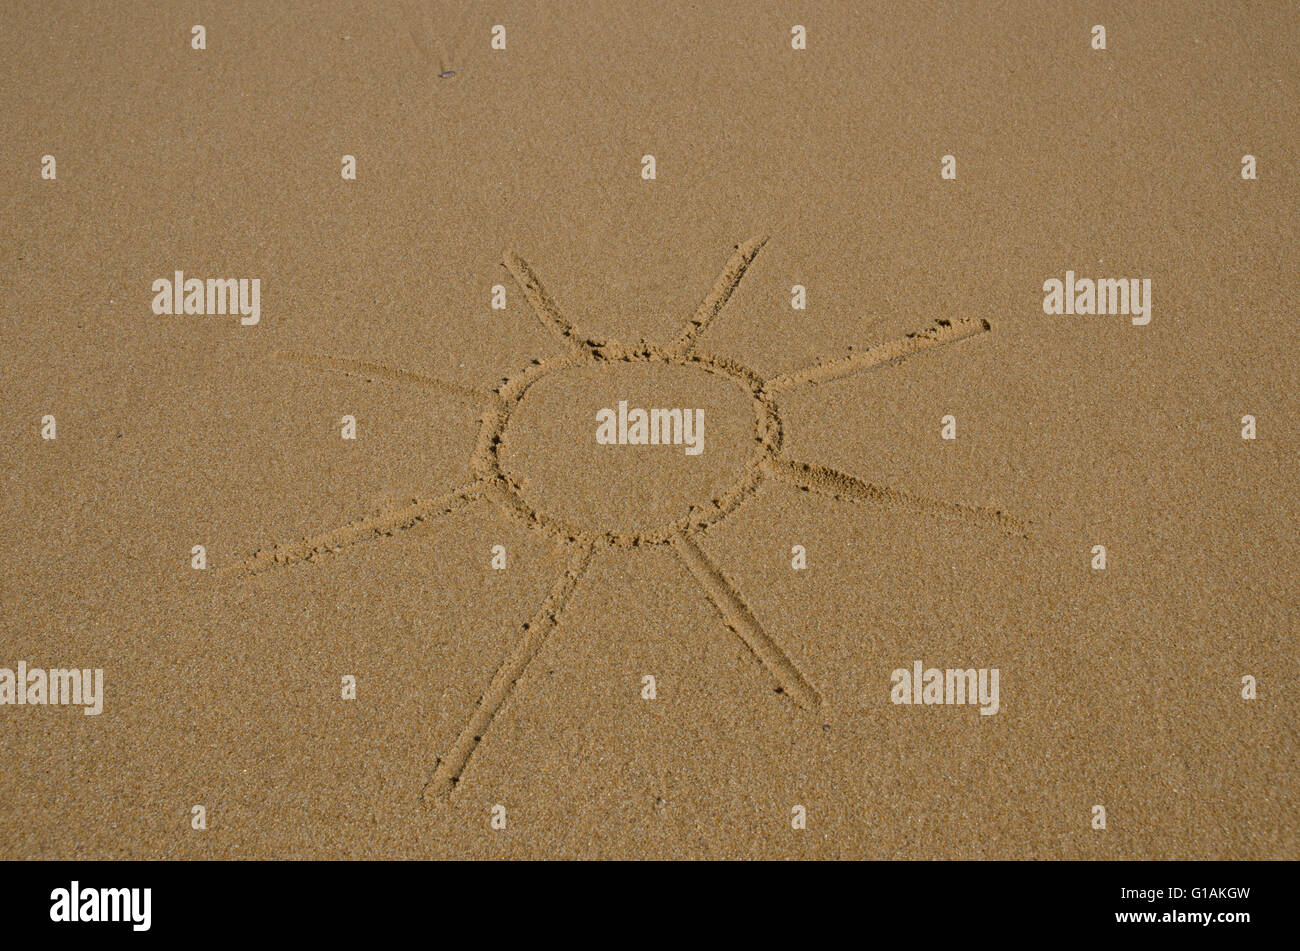 Immagine del sole disegnato in sabbia bagnata Foto Stock